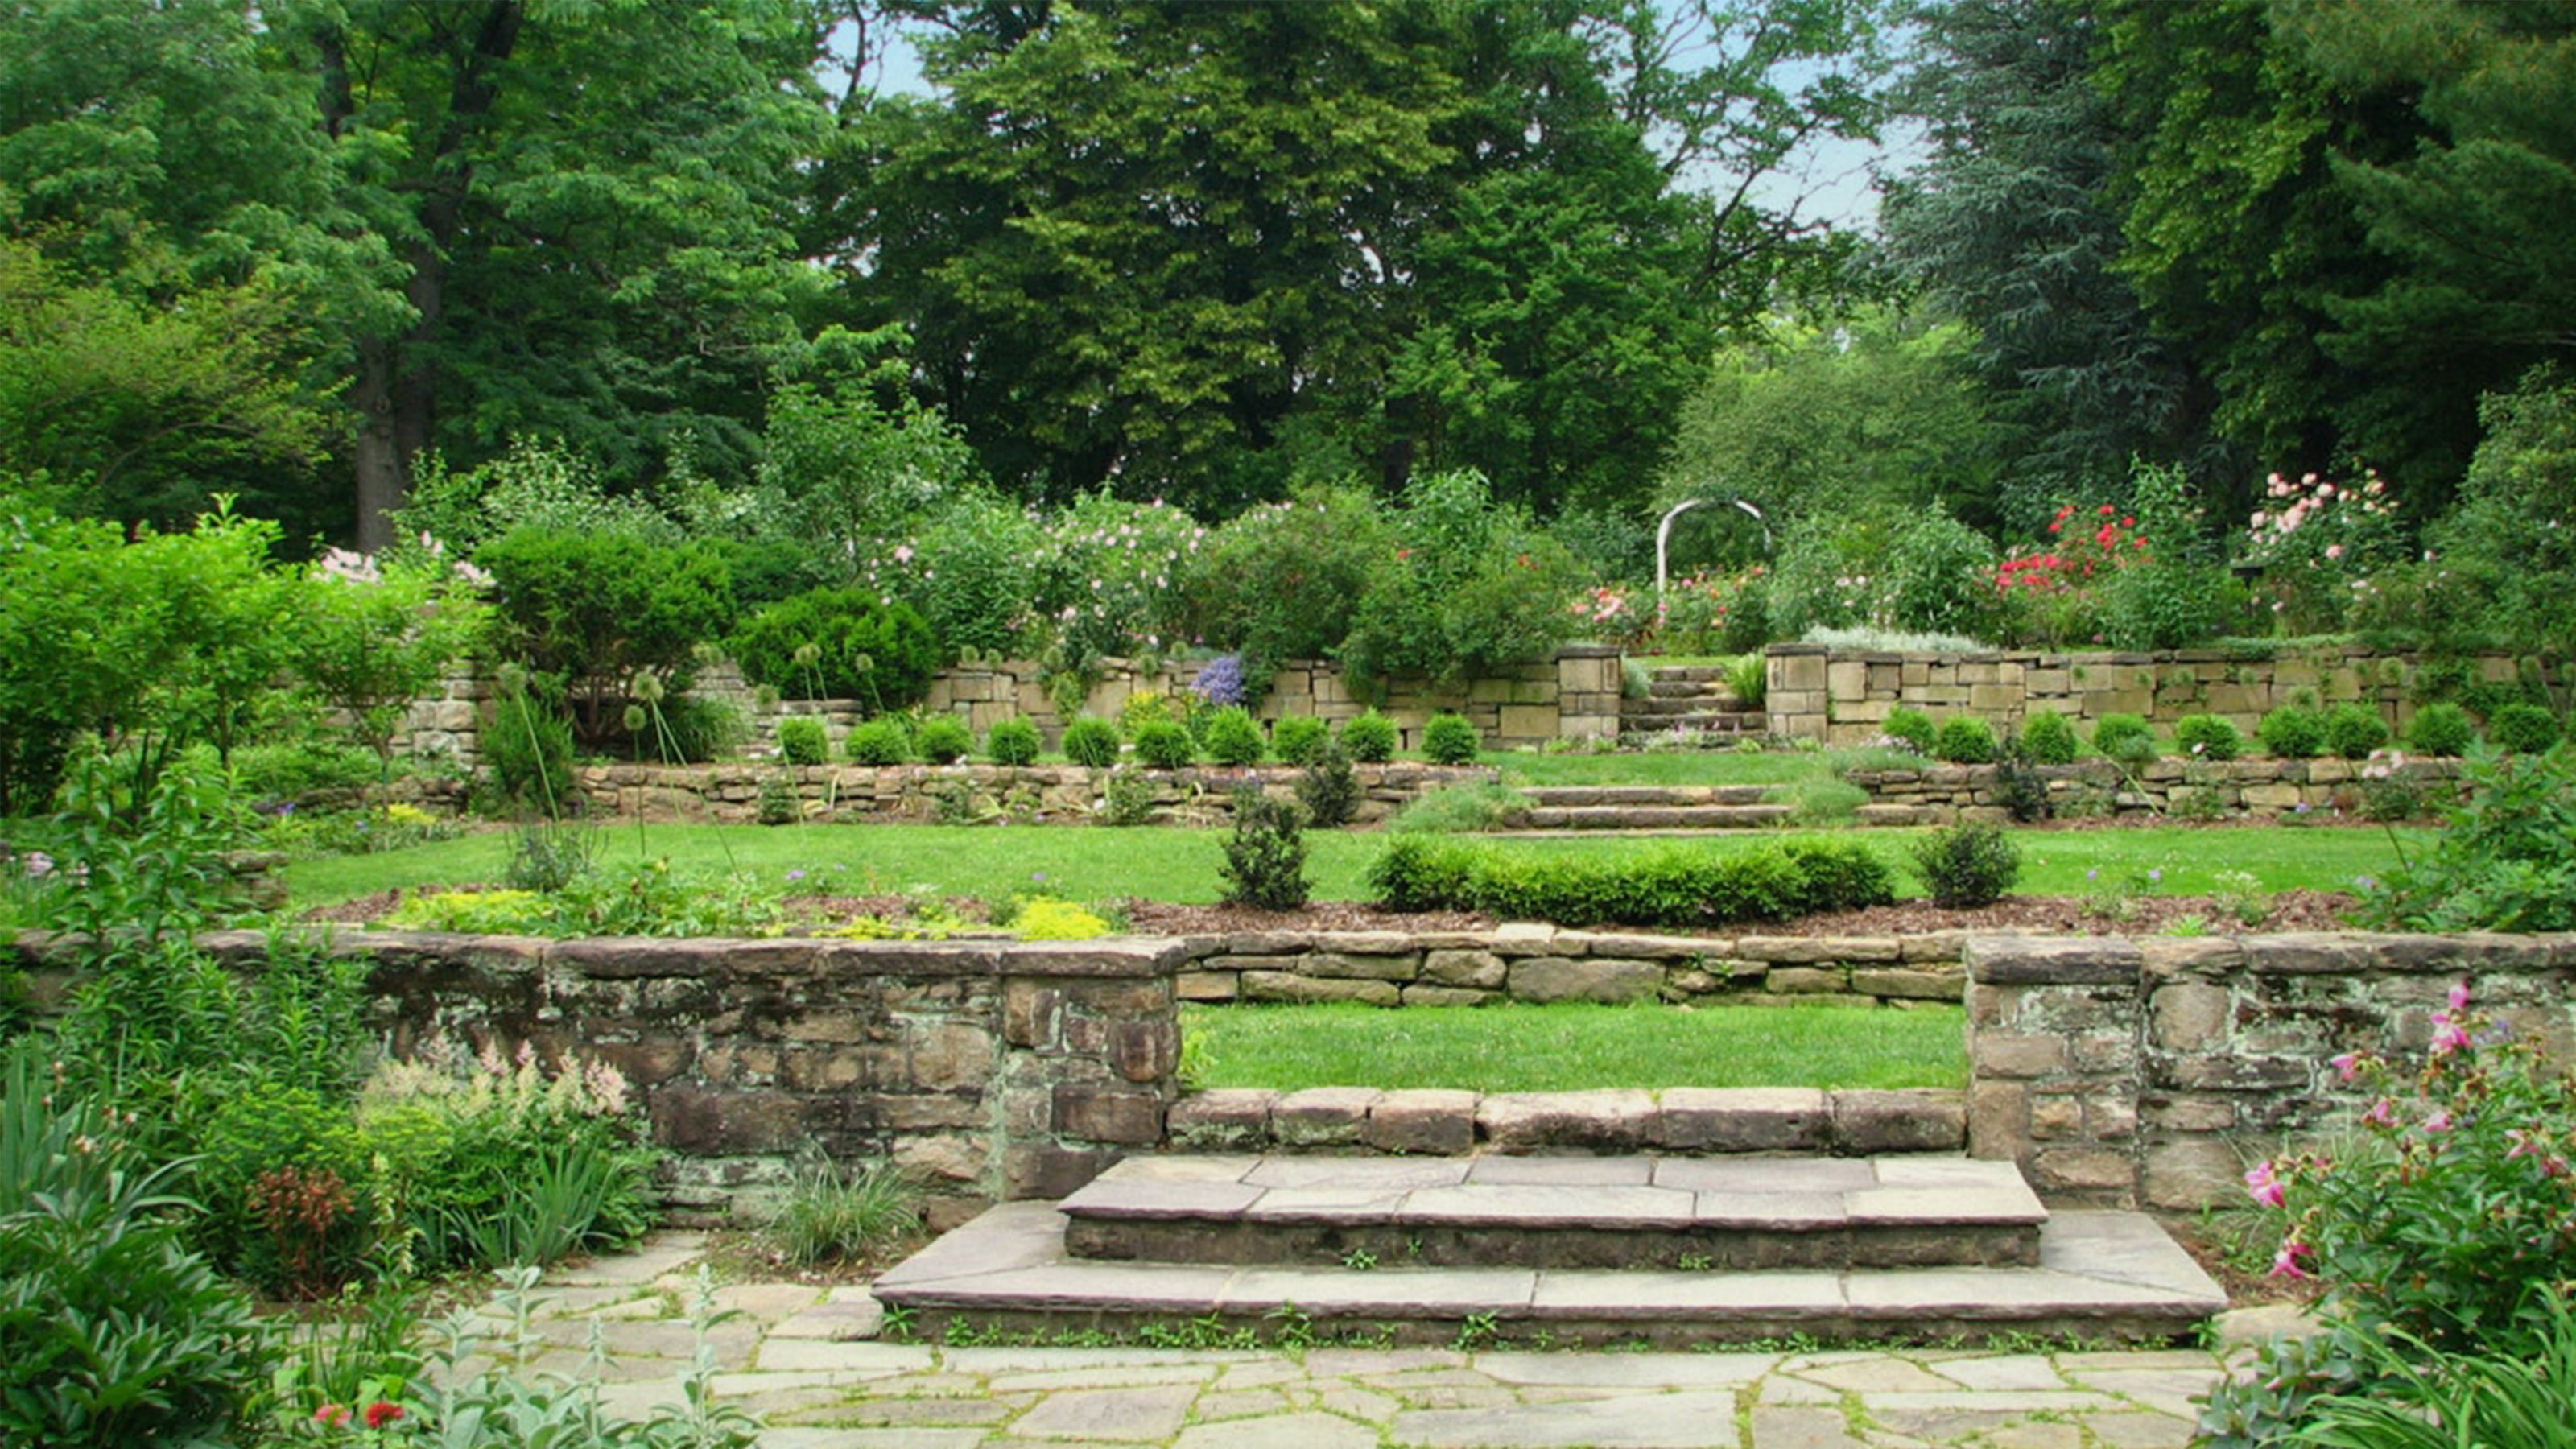 Barnes Arboretum at Saint Joseph's Univeristy